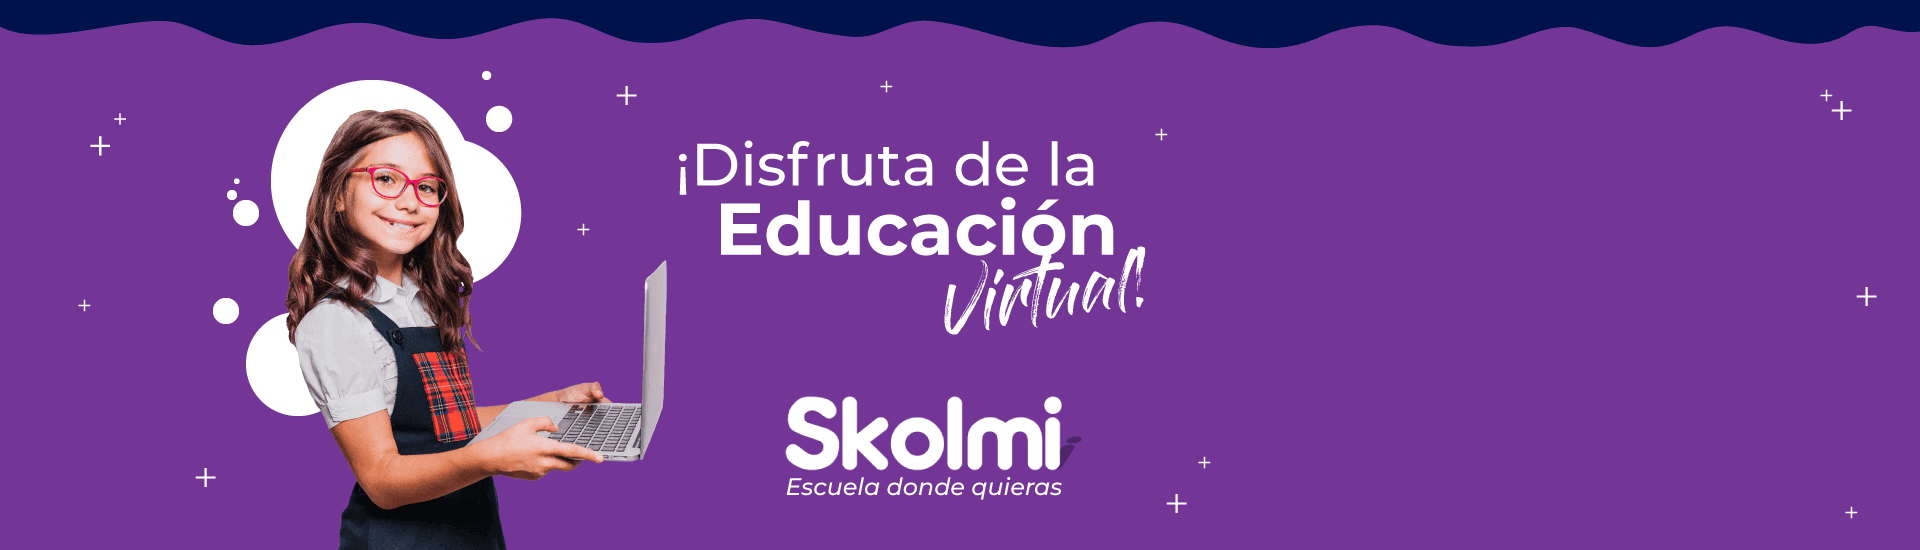 Banner de la plataforma educativa Skolmi con una niña sosteniendo un computador